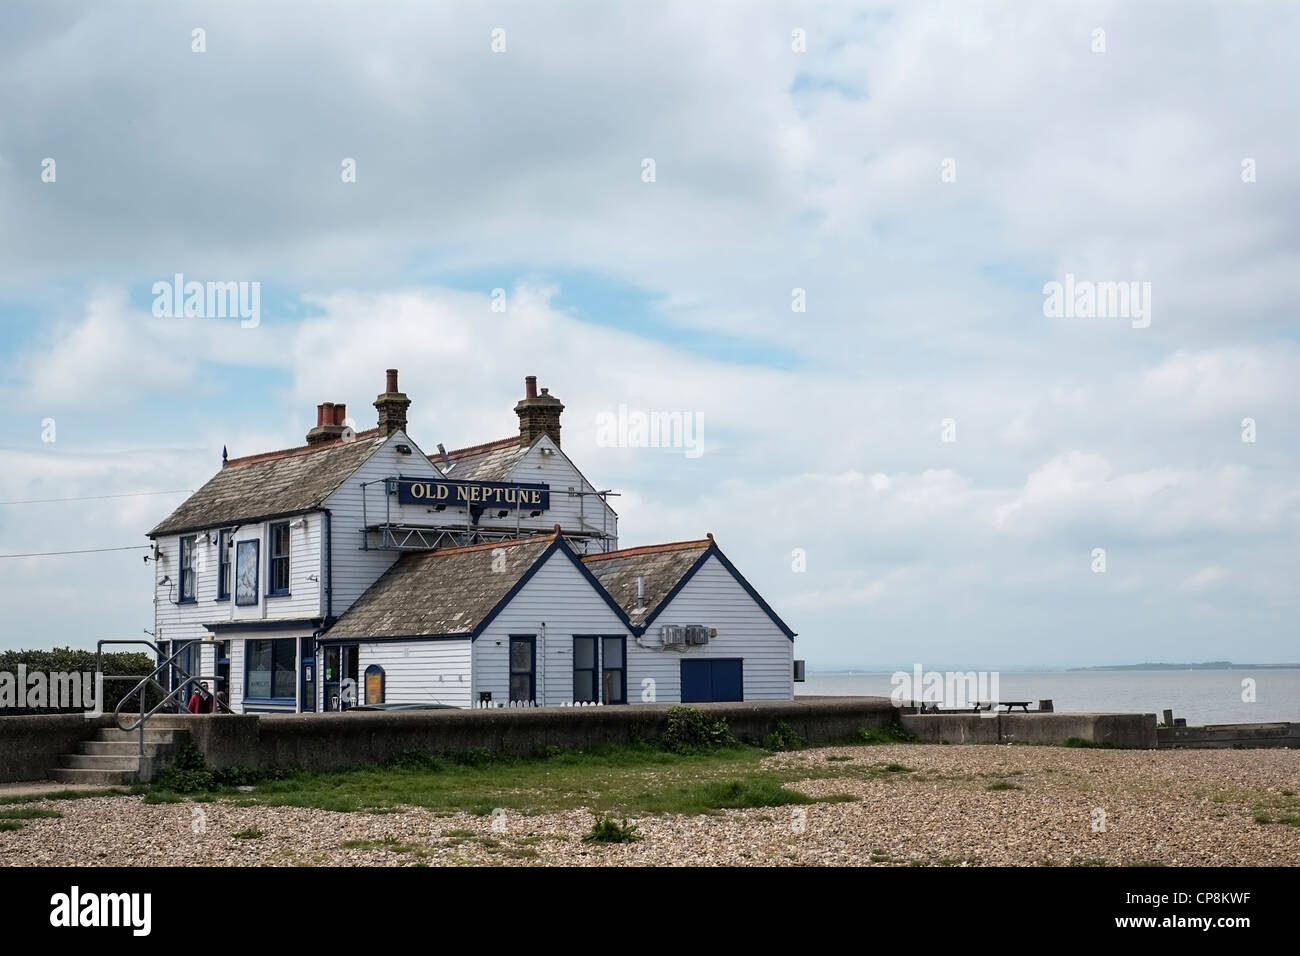 Le vieux Neptune Pub sur la plage, Whitstable, Kent, UK. Banque D'Images